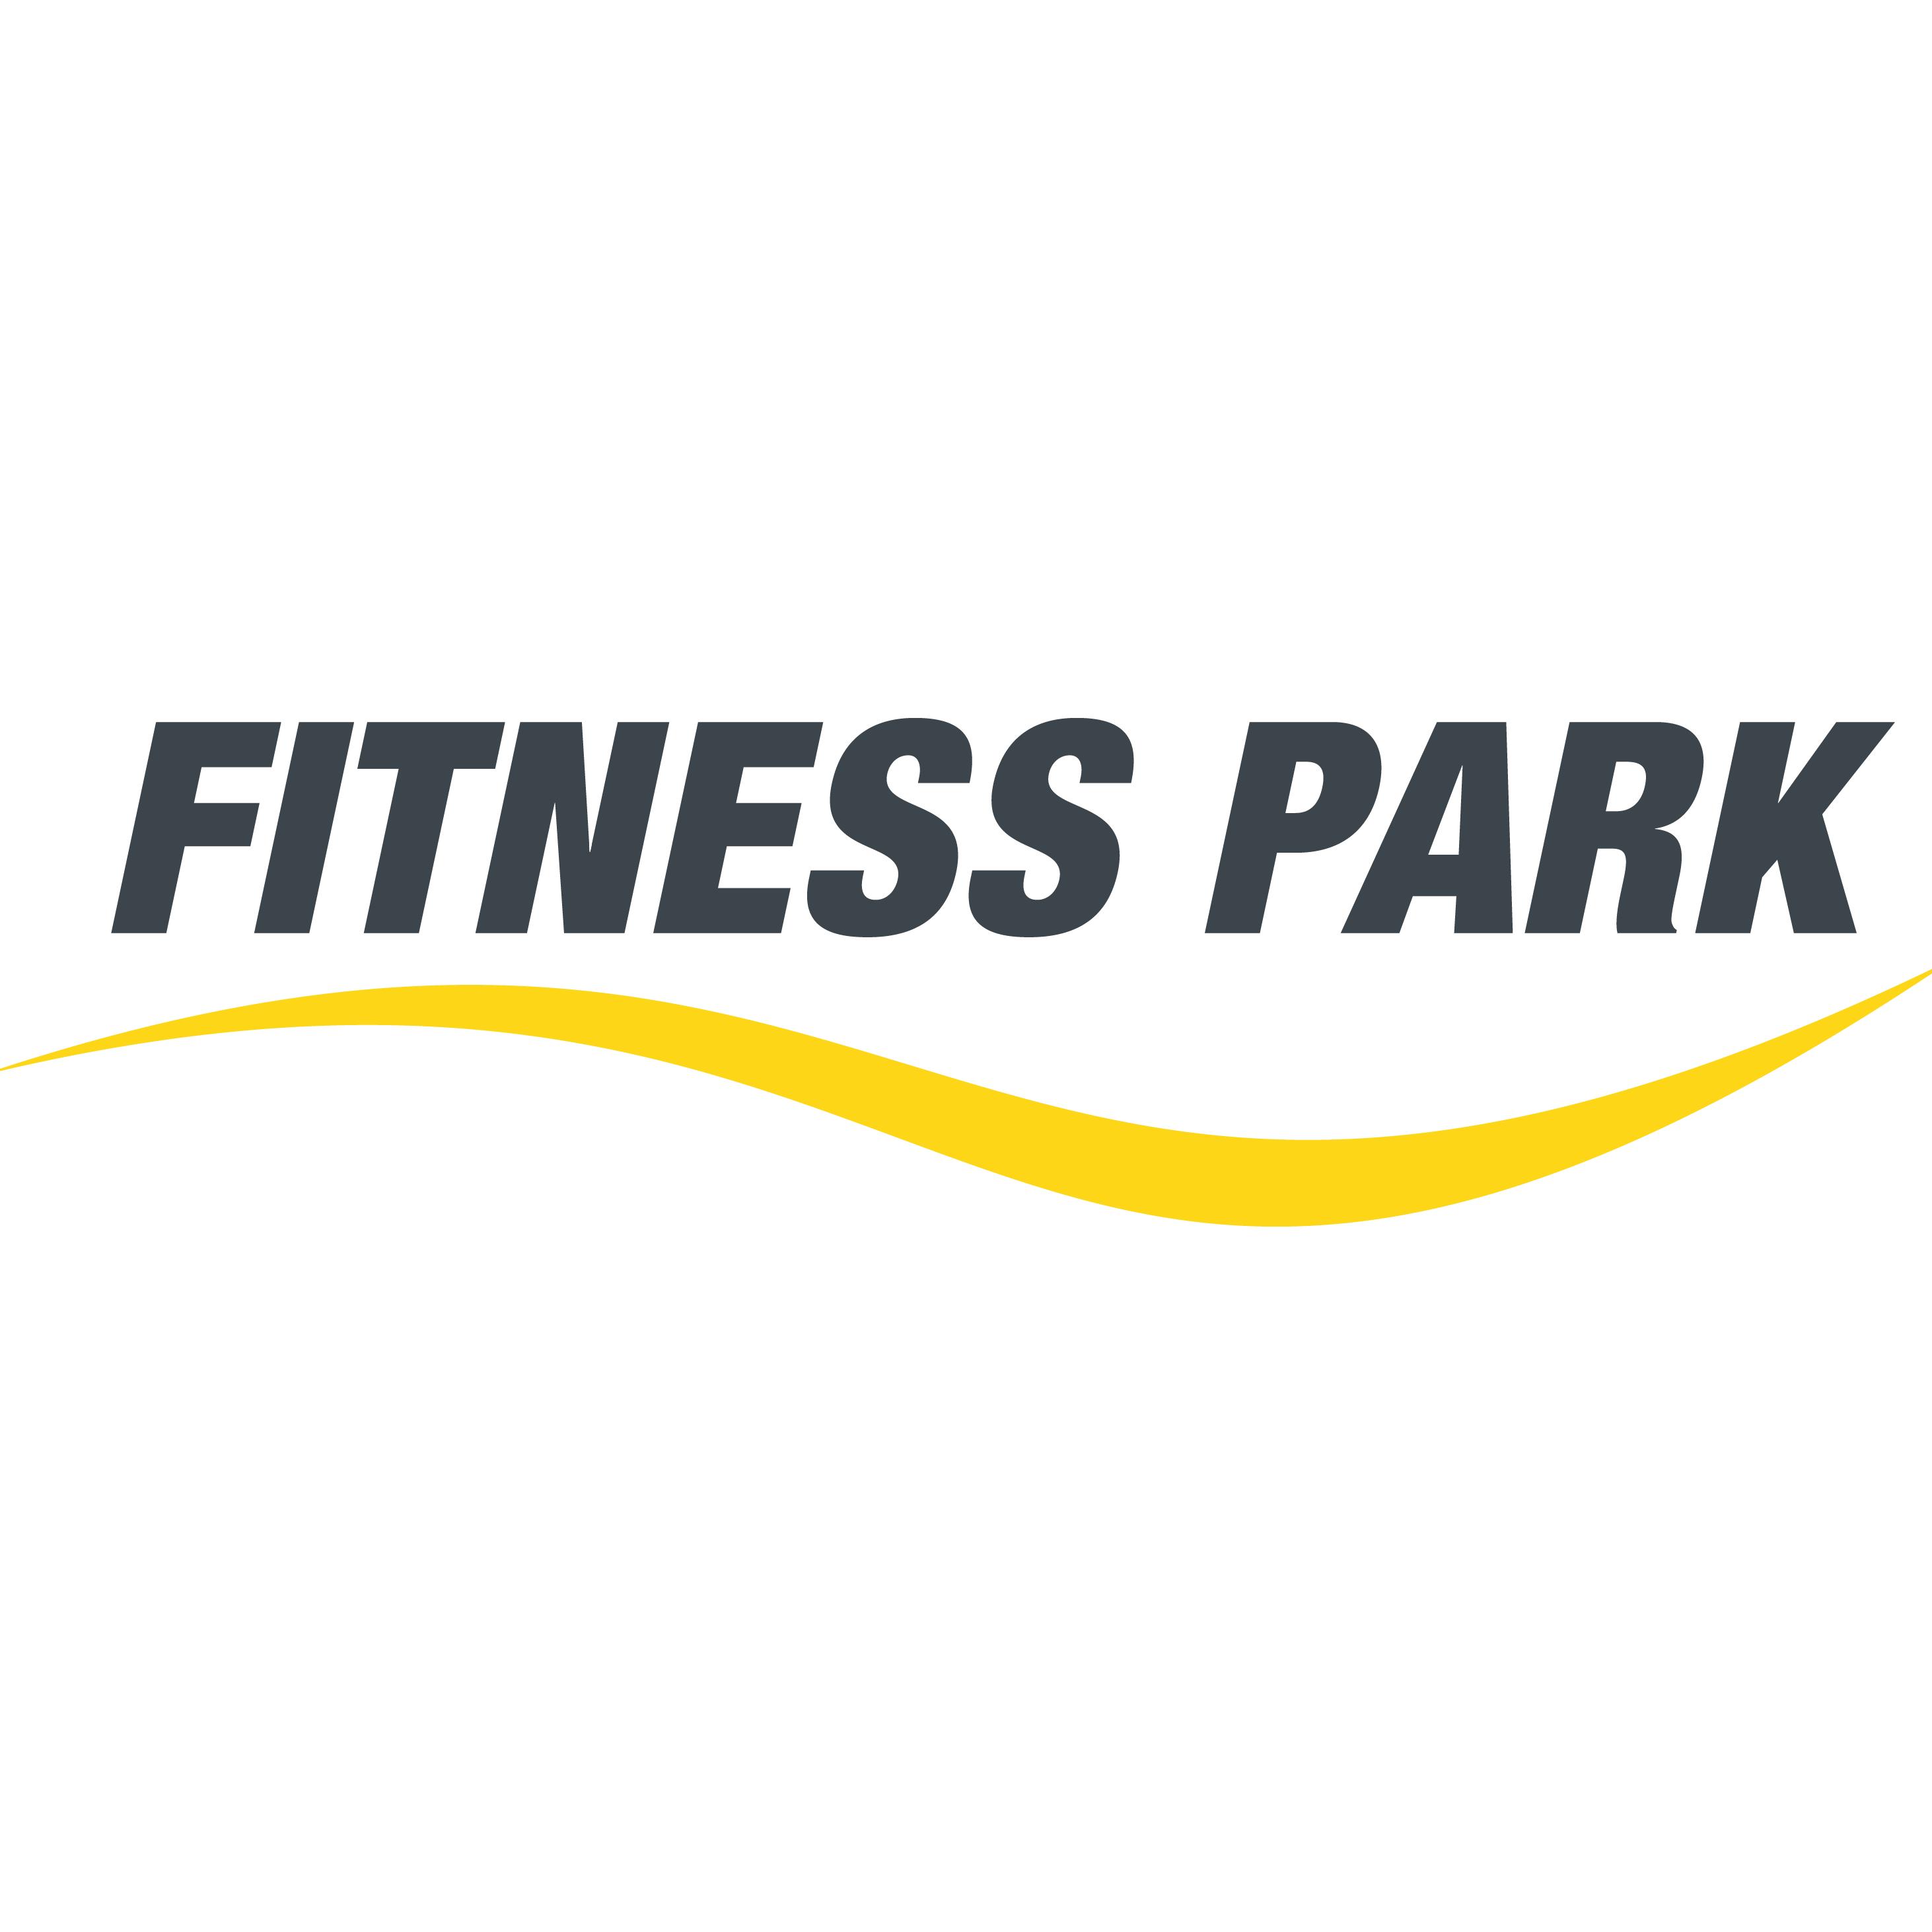 Fitness Park Saint-maur-des-fossés Saint Maur Des Fossés